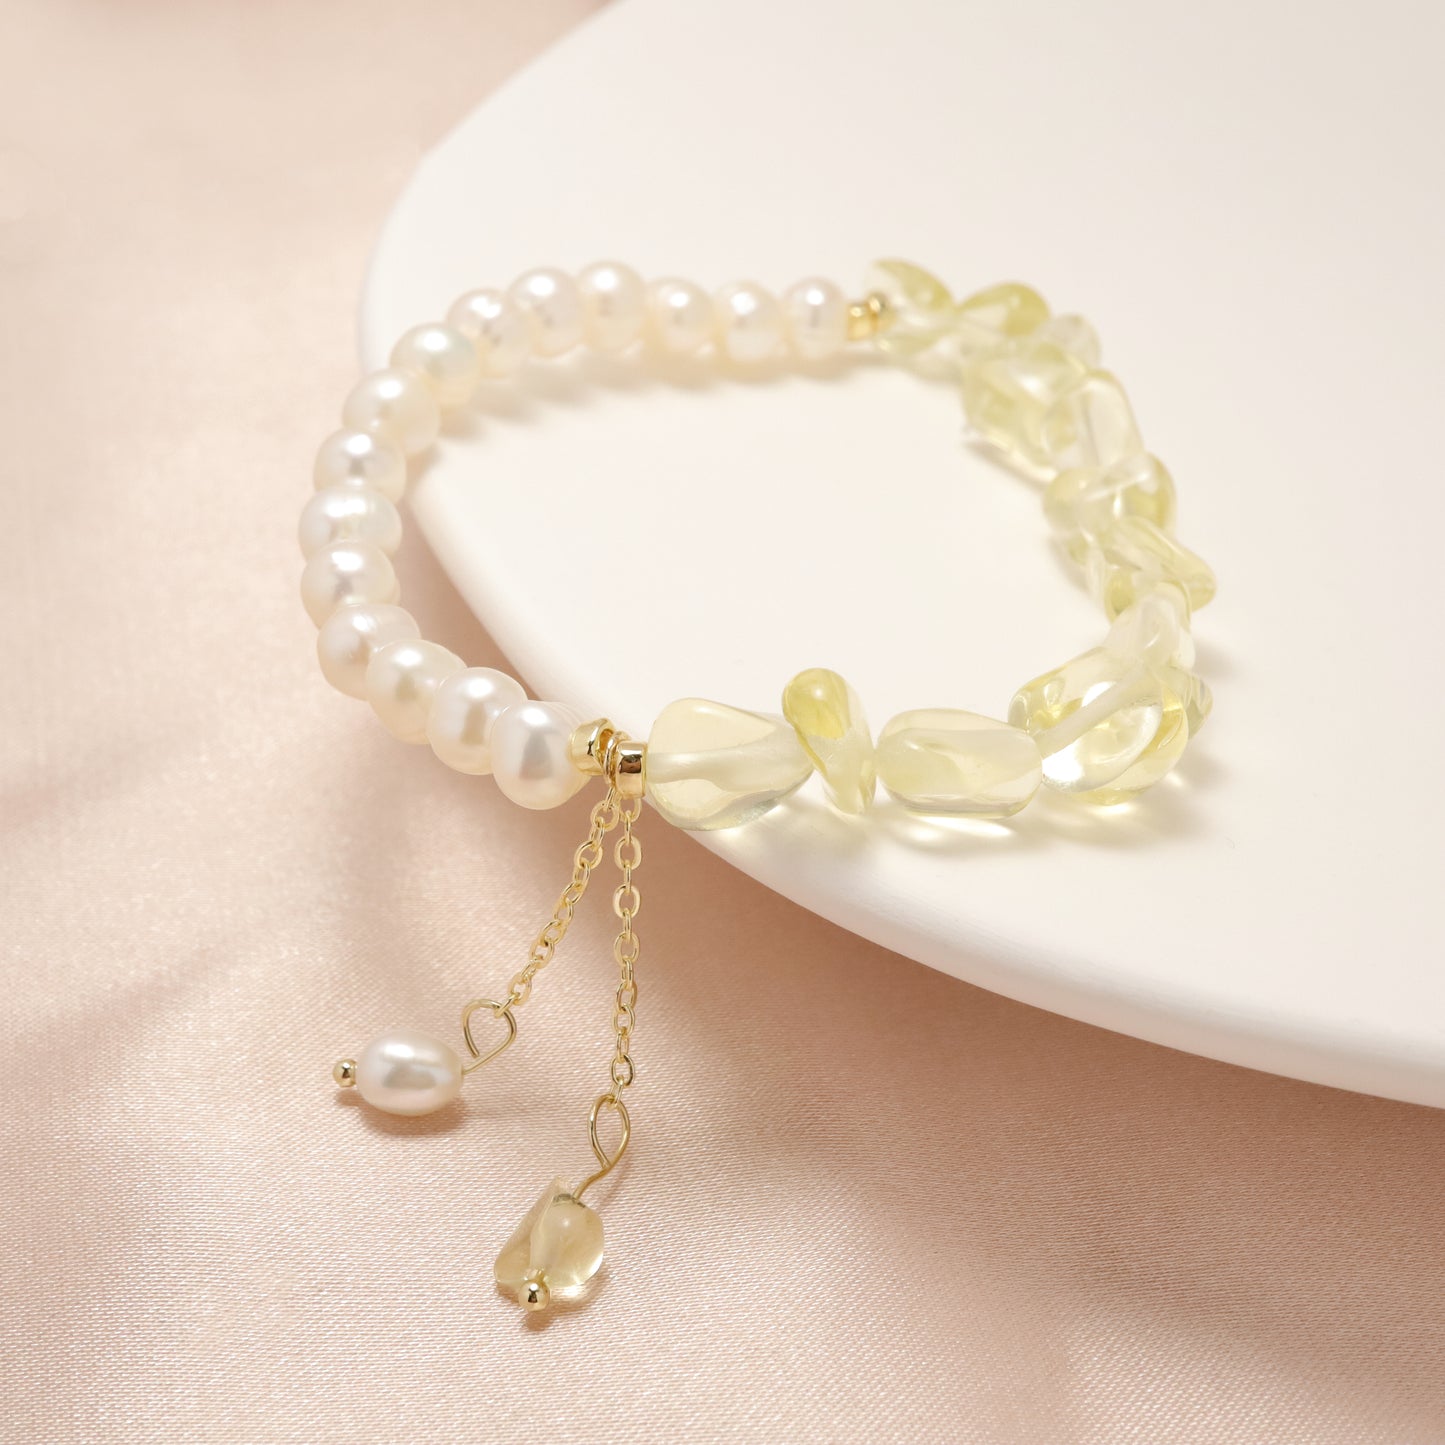 Sunlight - Irregular Shape Lemon Quartz & Freshwater Pearl Bracelet